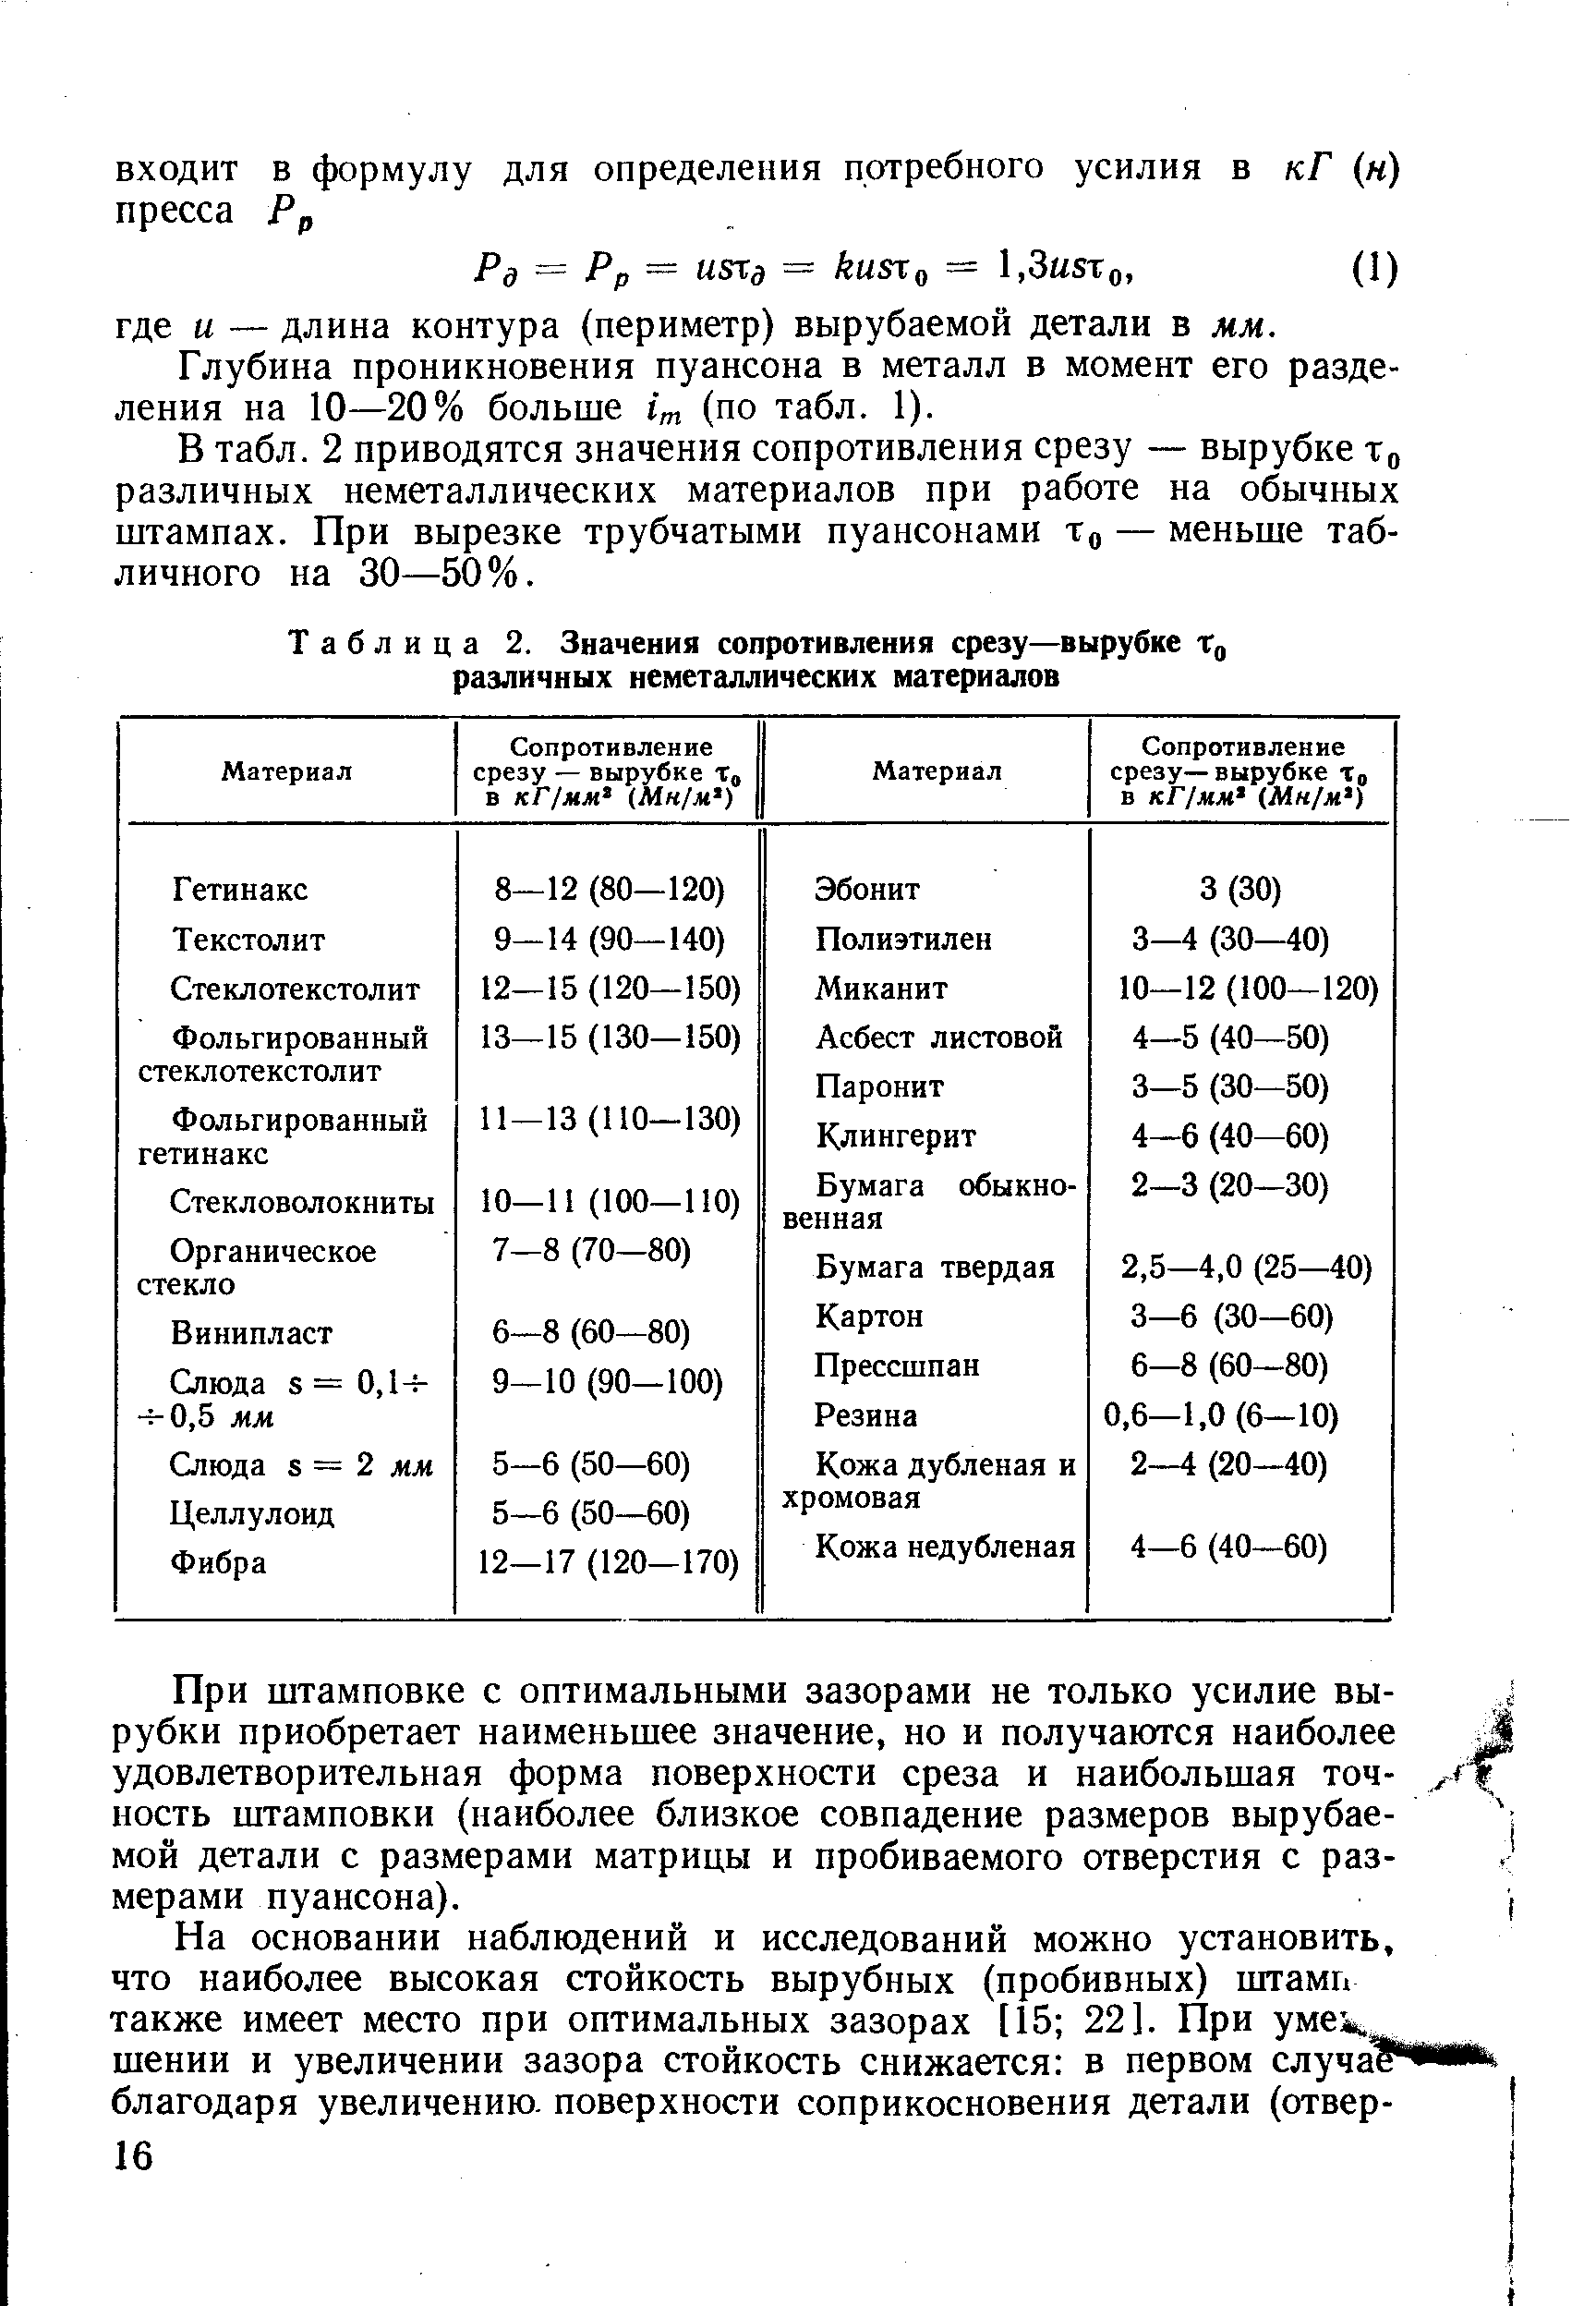 Таблица 2. Значения <a href="/info/28862">сопротивления срезу</a>—вырубке Хд различных неметаллических материалов
